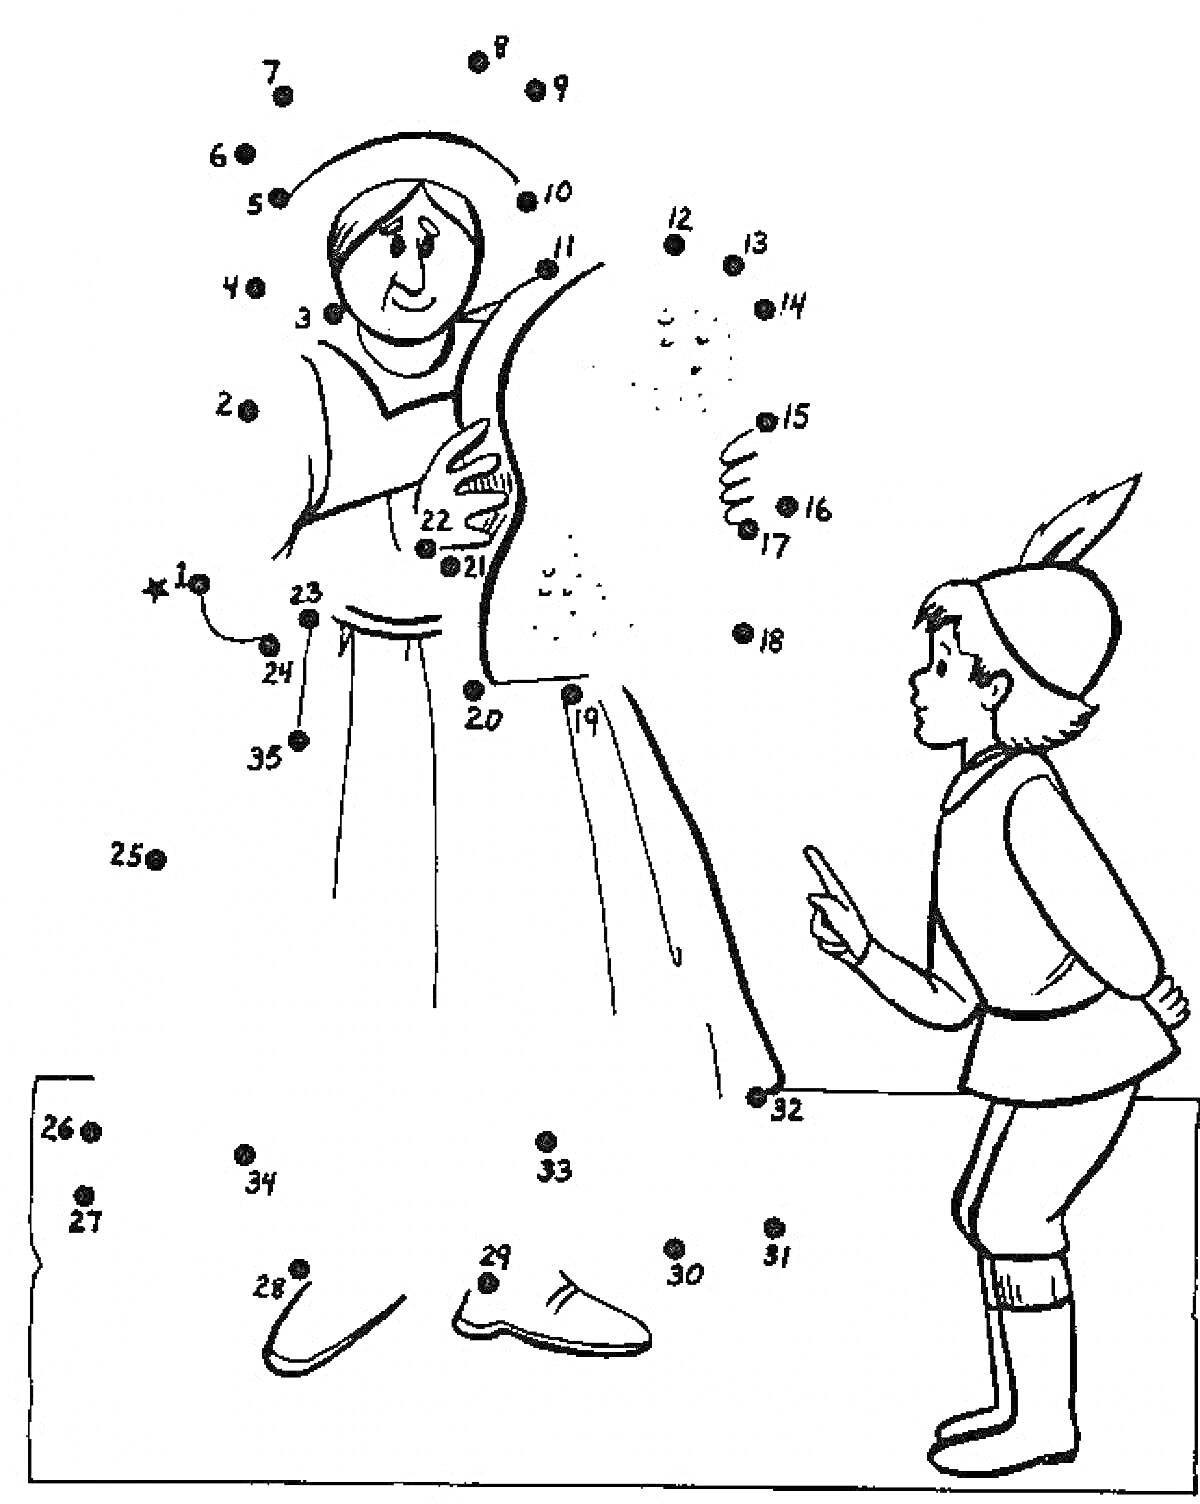 Фея и мальчик. На картинке изображены фея в длинном платье с волшебной палочкой и мальчик, который стоит напротив нее.